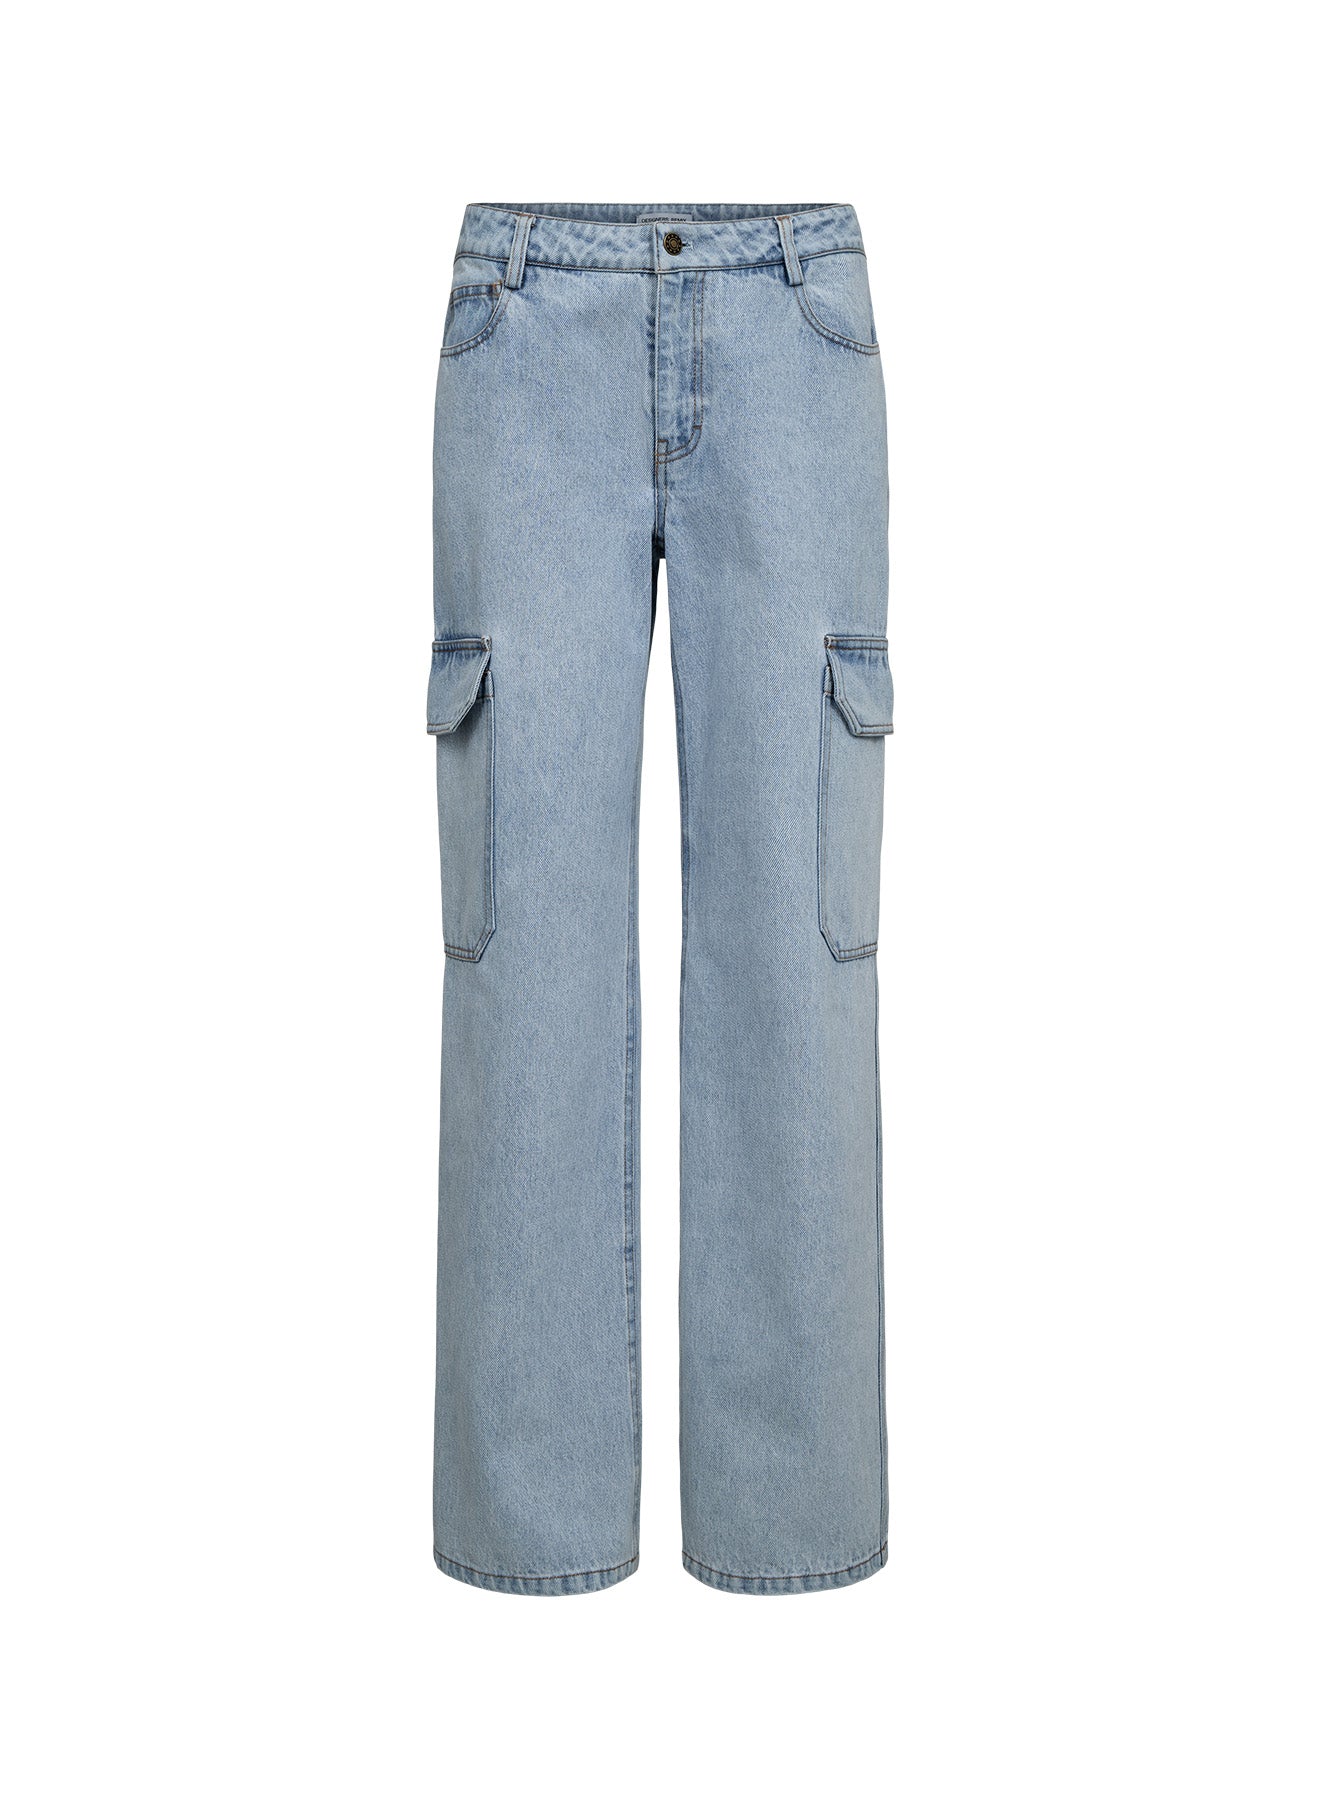 Miles Pocket Jeans